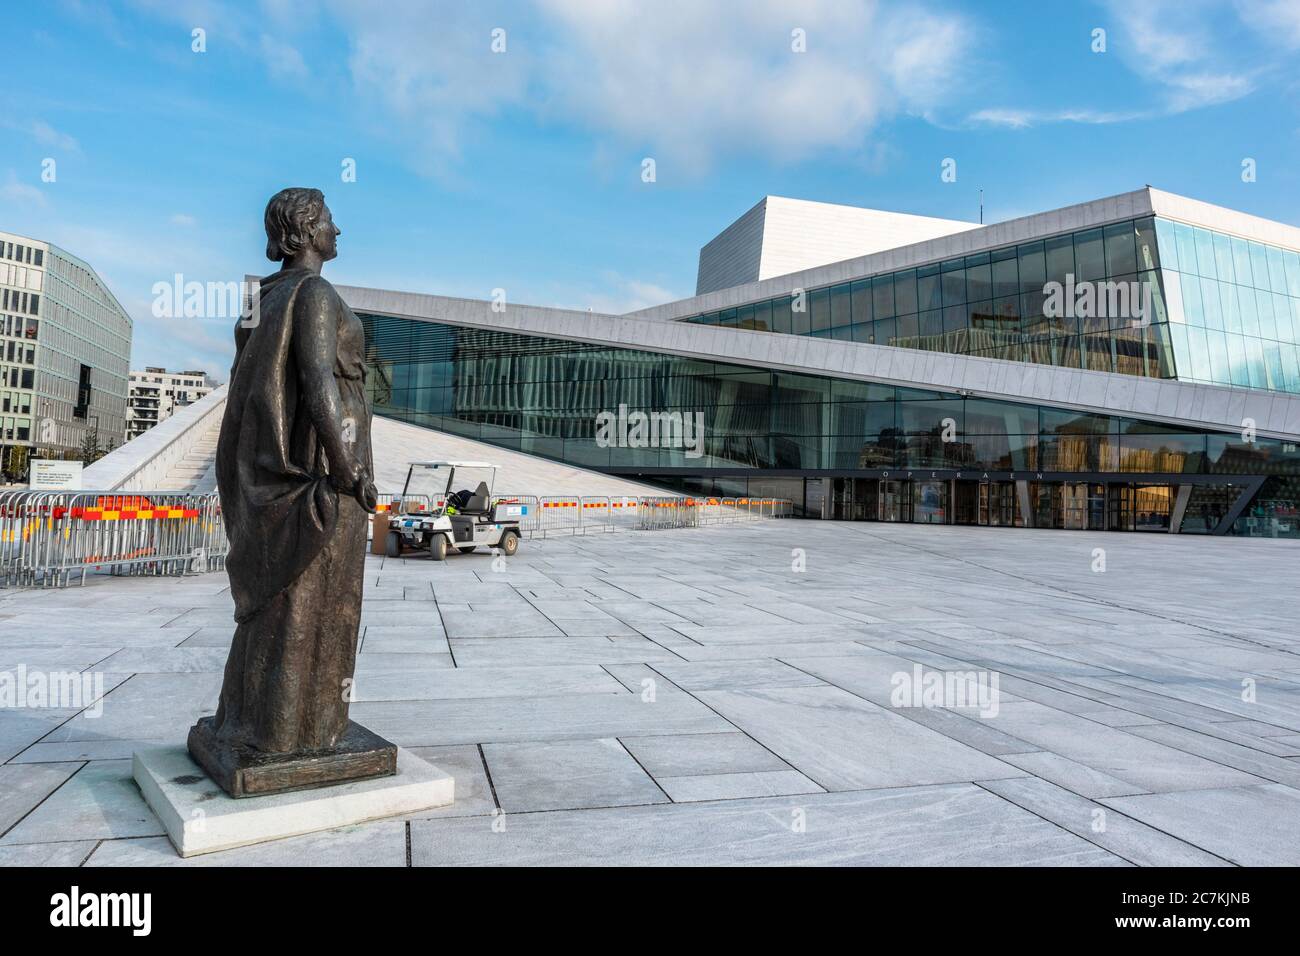 Oslo, Norvège - 10 septembre 2019 : statue de Kirsten Flagstad devant l'Opéra d'Oslo. Architecture moderne extérieure du bâtiment avec grani blanc Banque D'Images